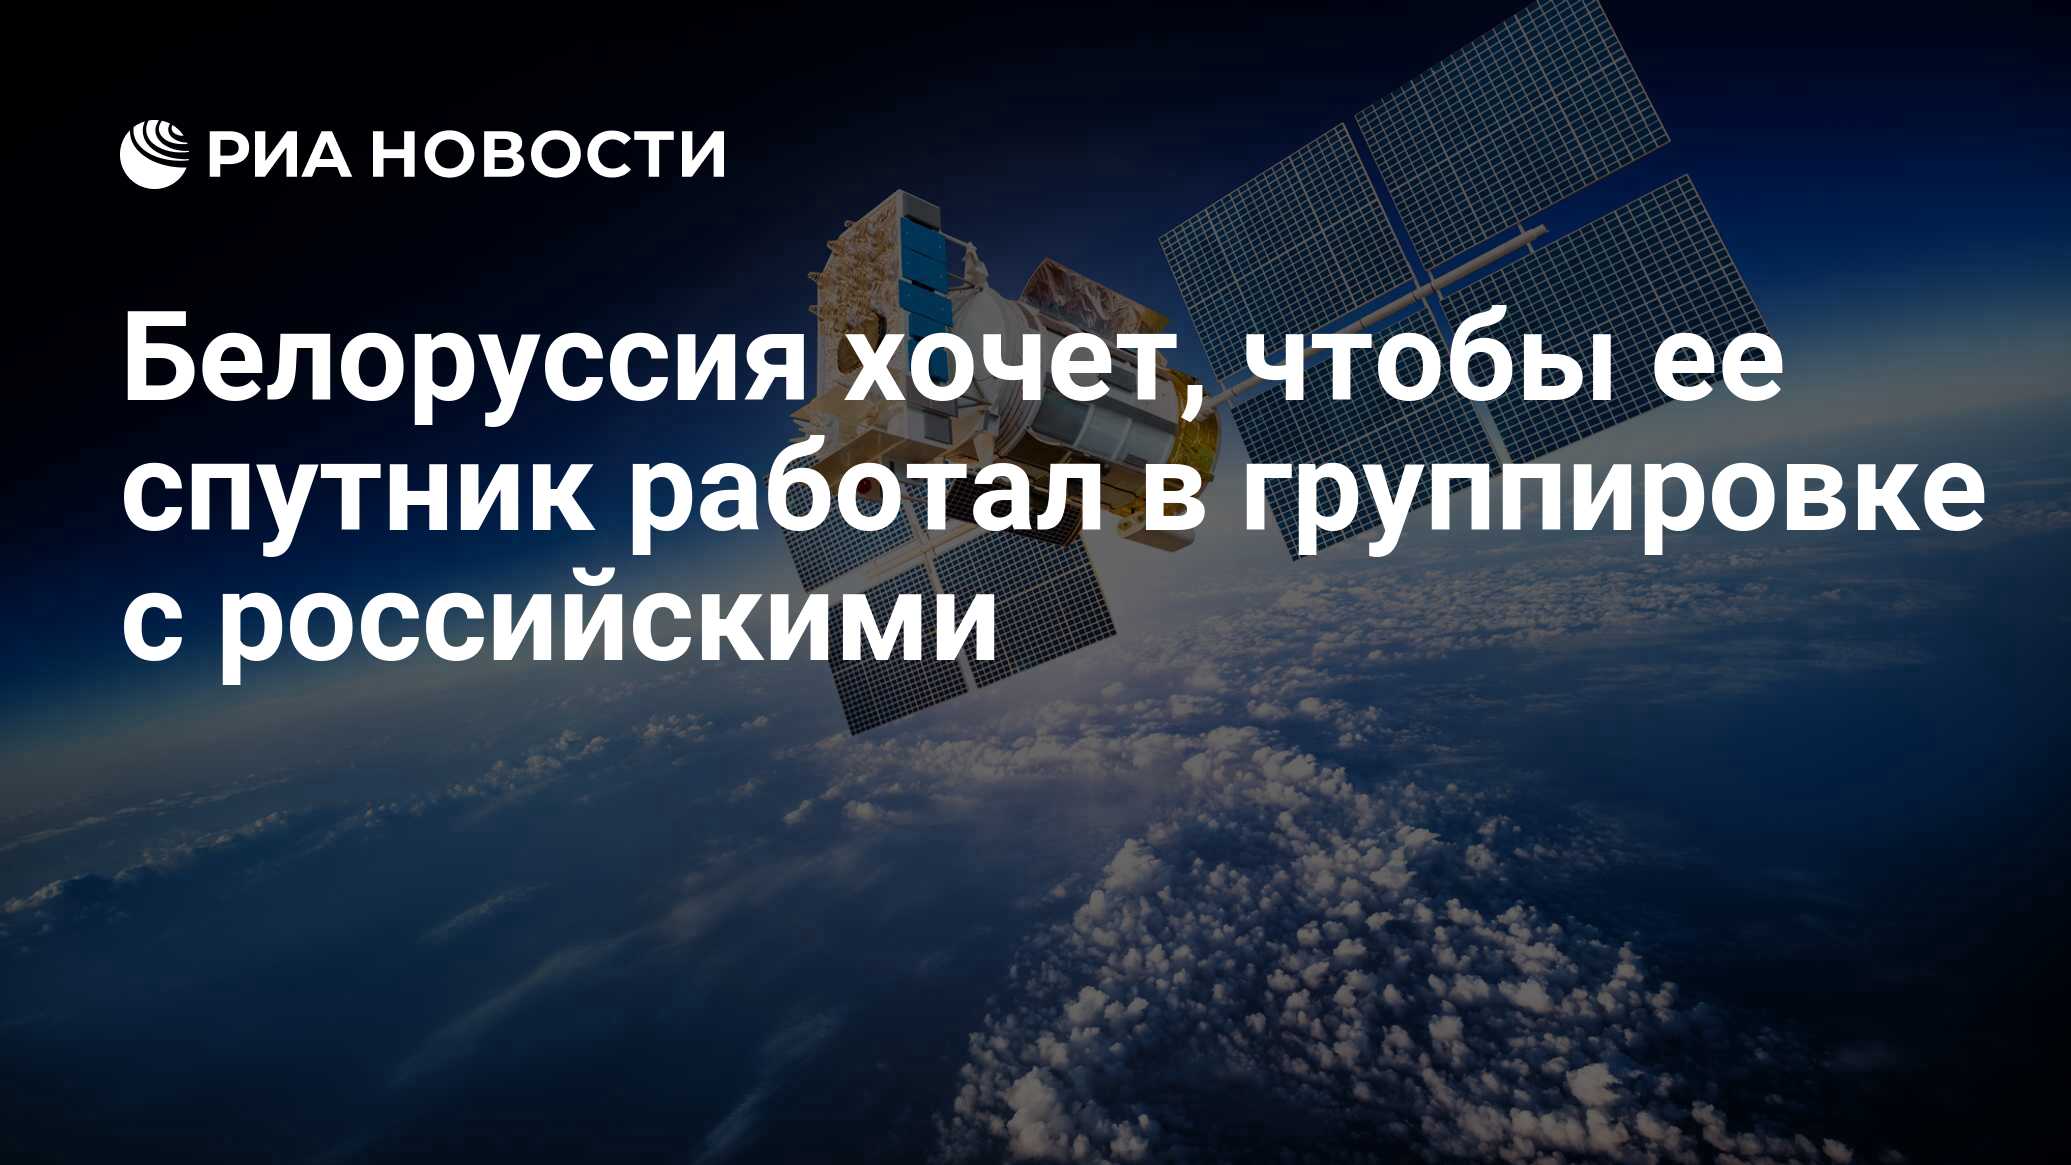 Спутник по годам. Спутник ГЛОНАСС. Спутники ГЛОНАСС Орбита. Белорусский космический Спутник. Спутник ДЗЗ.